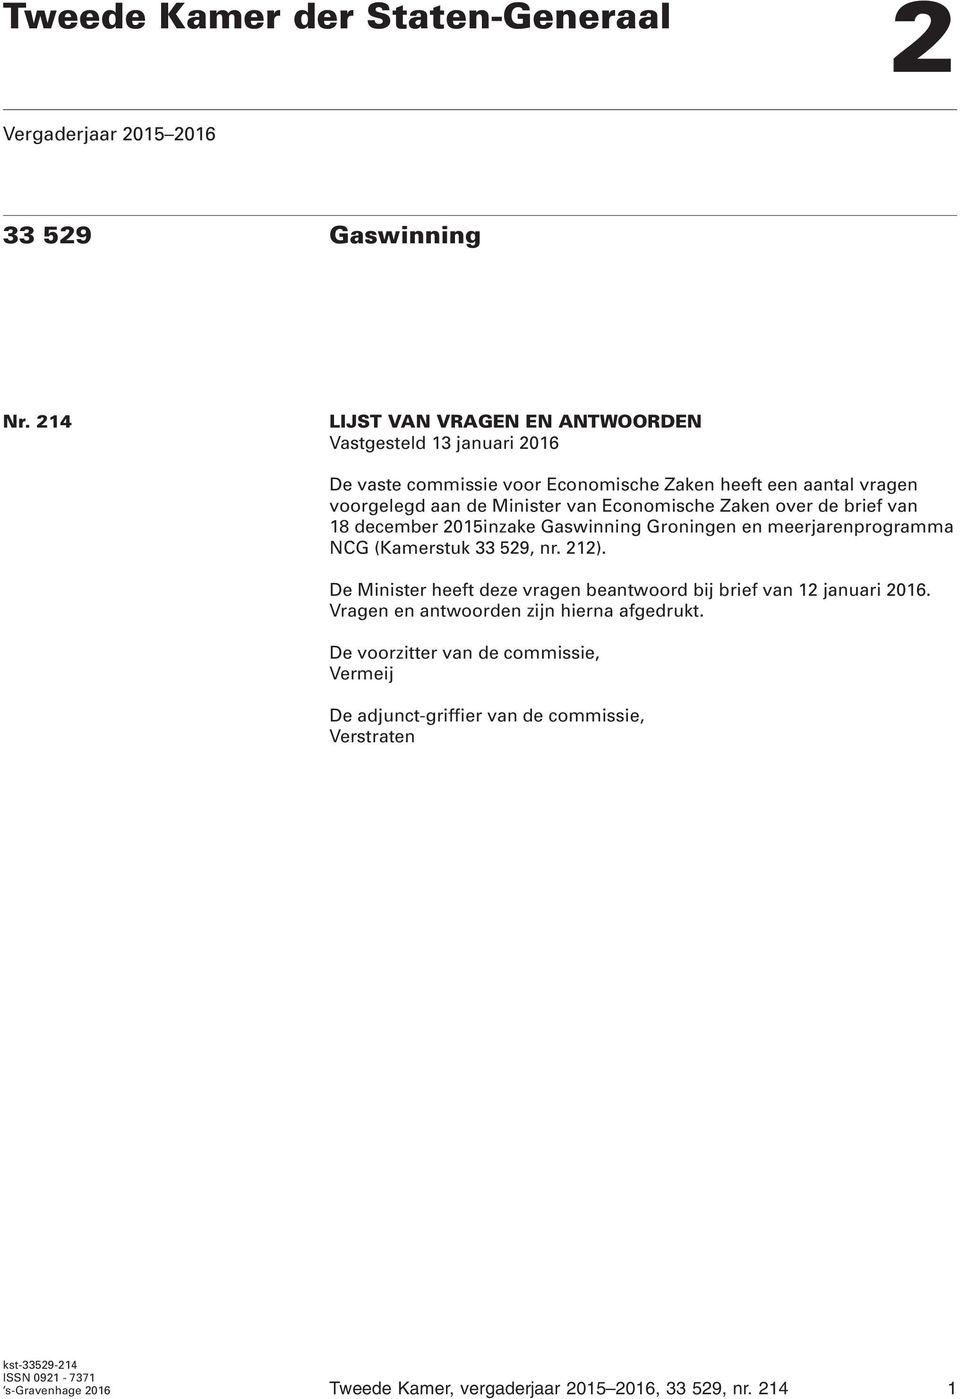 Economische Zaken over de brief van 18 december 2015inzake Gaswinning Groningen en meerjarenprogramma NCG (Kamerstuk 33 529, nr. 212).